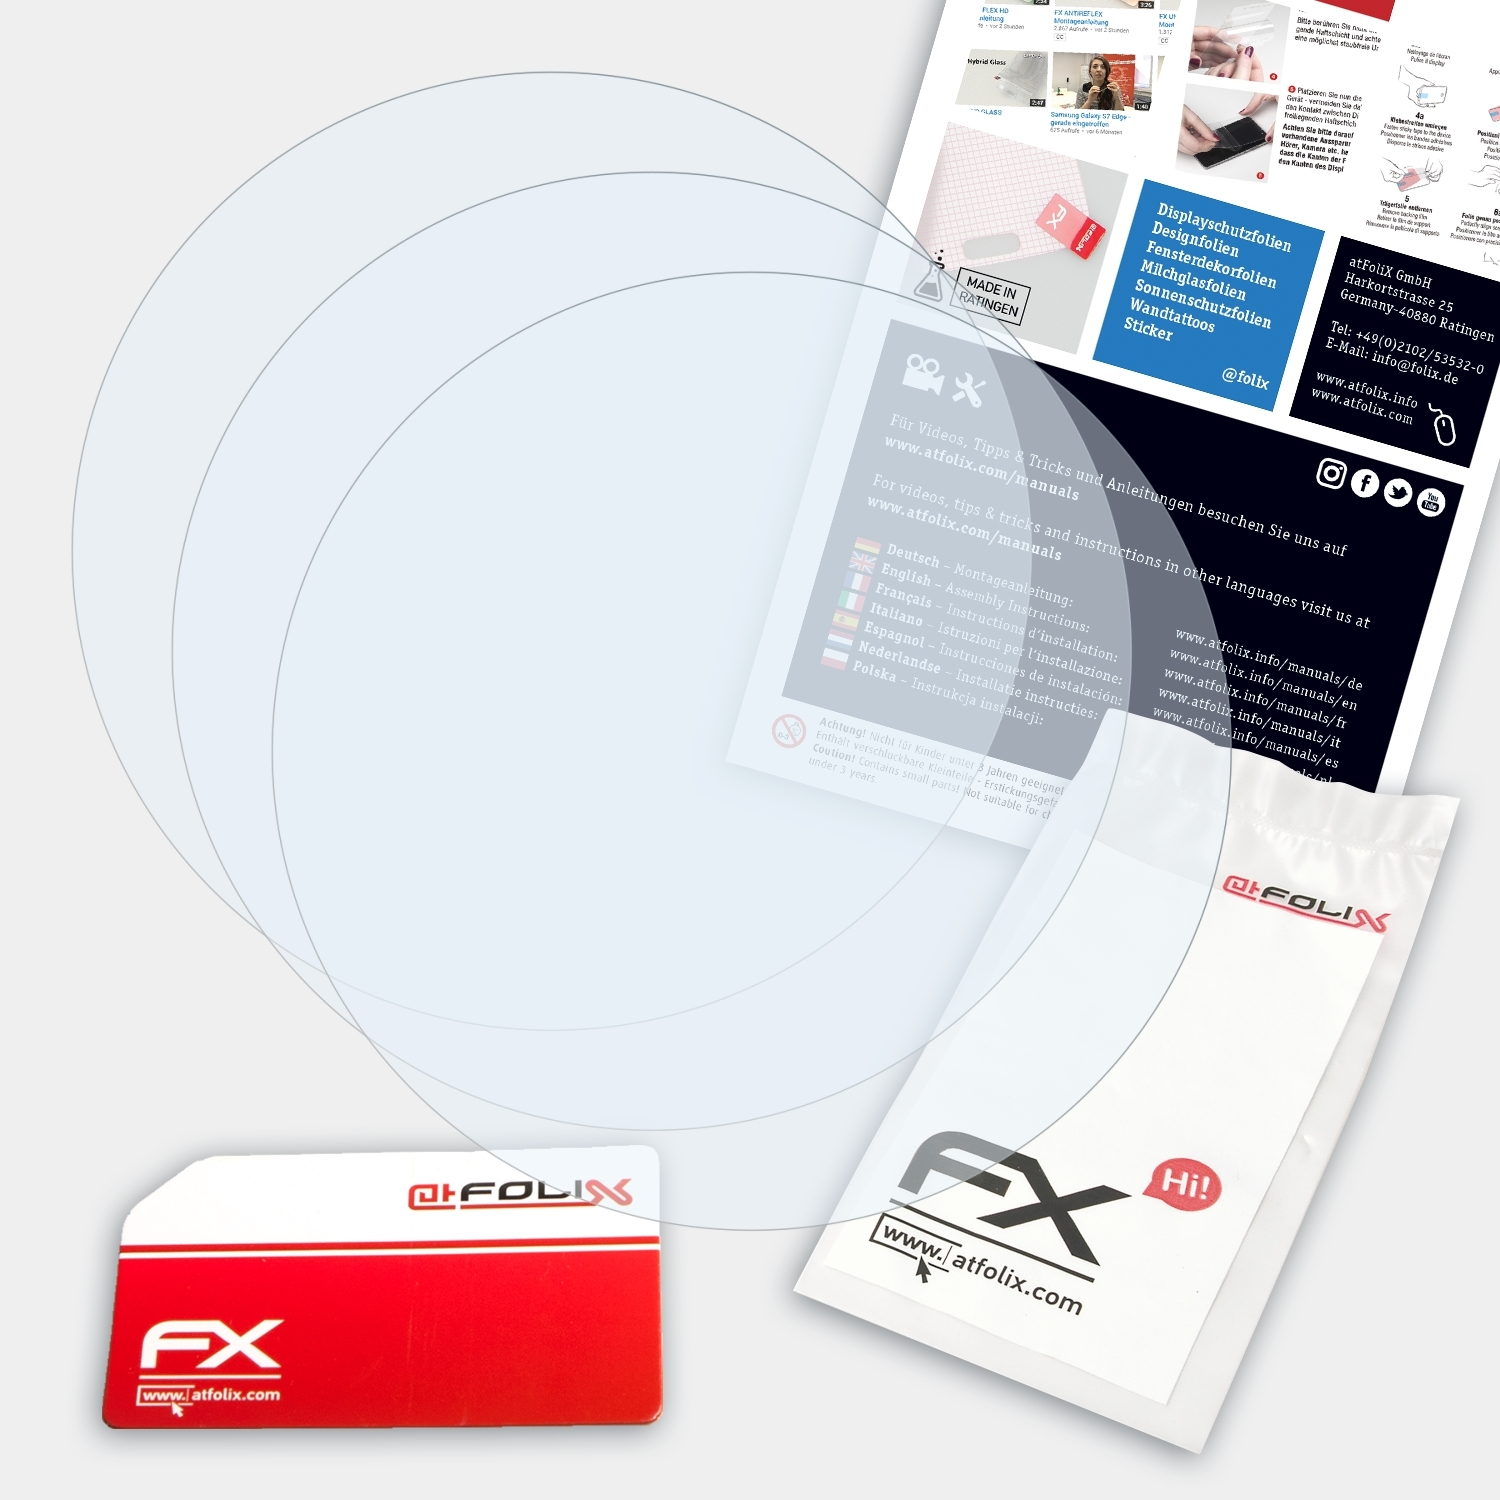 ATFOLIX Mk1) 3x Garmin FX-Clear Descent Displayschutz(für